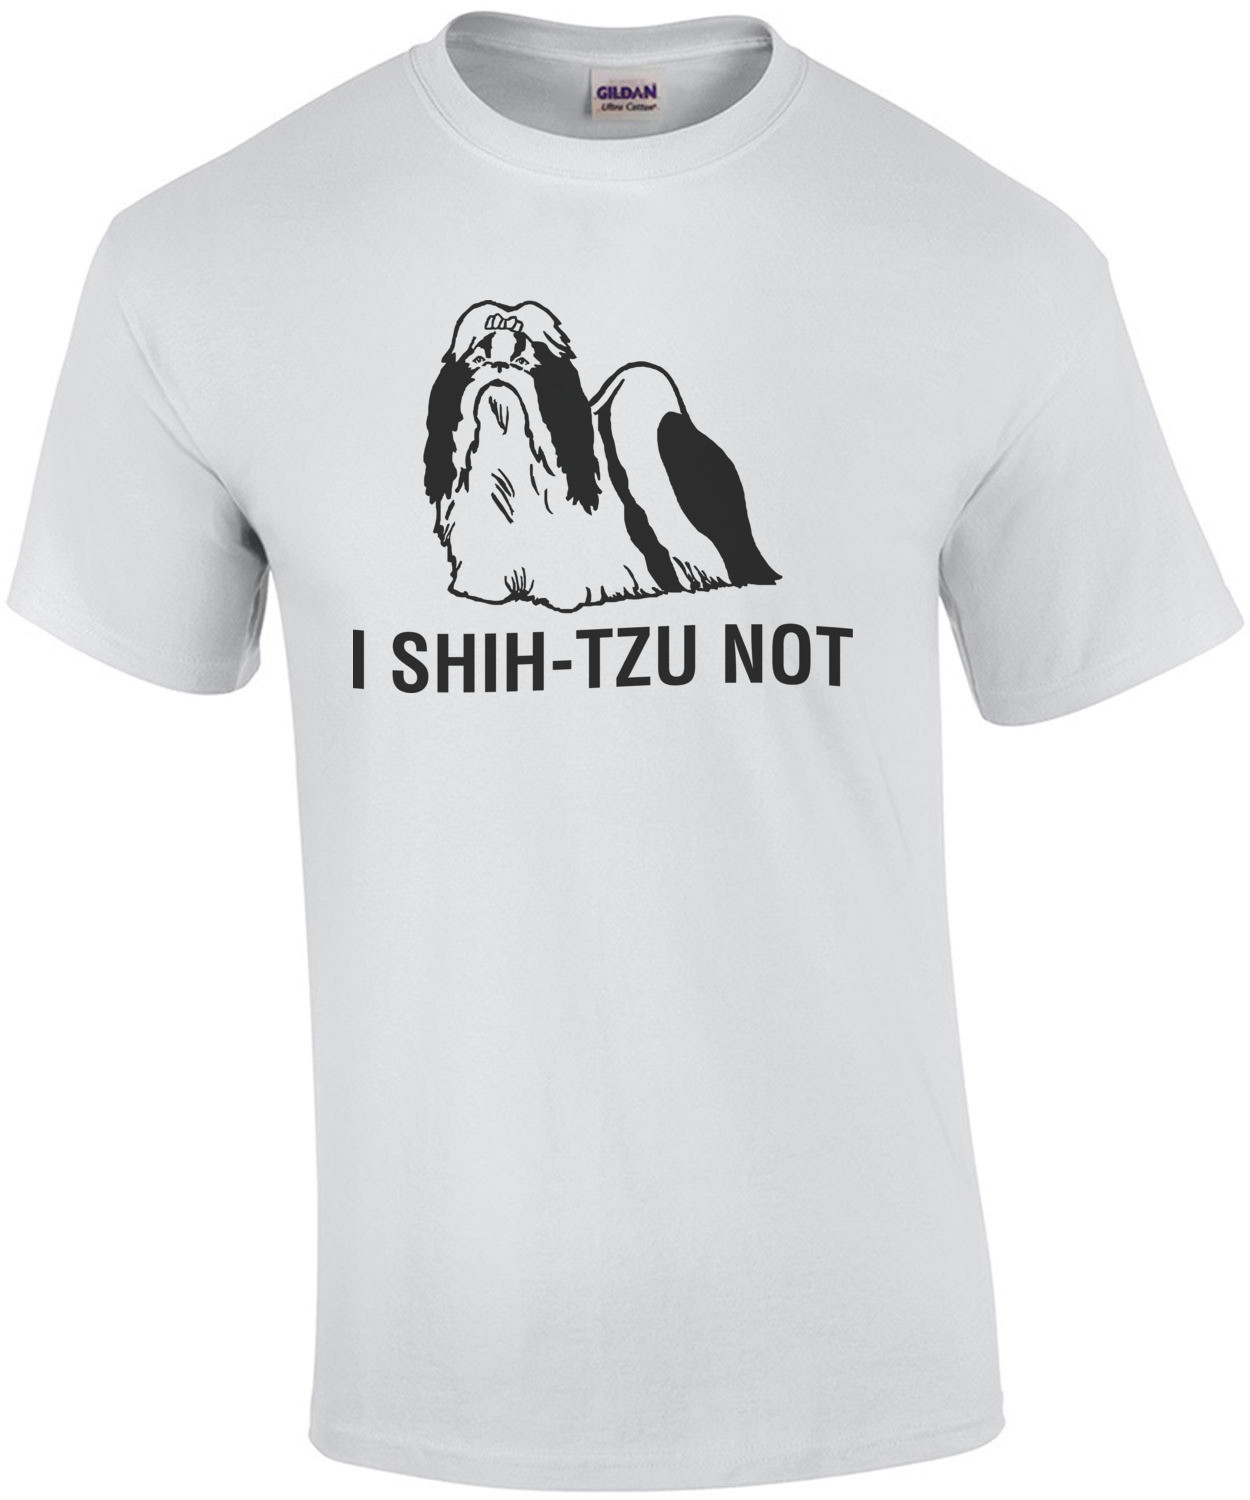 I Shi-Tzu Not Shirt